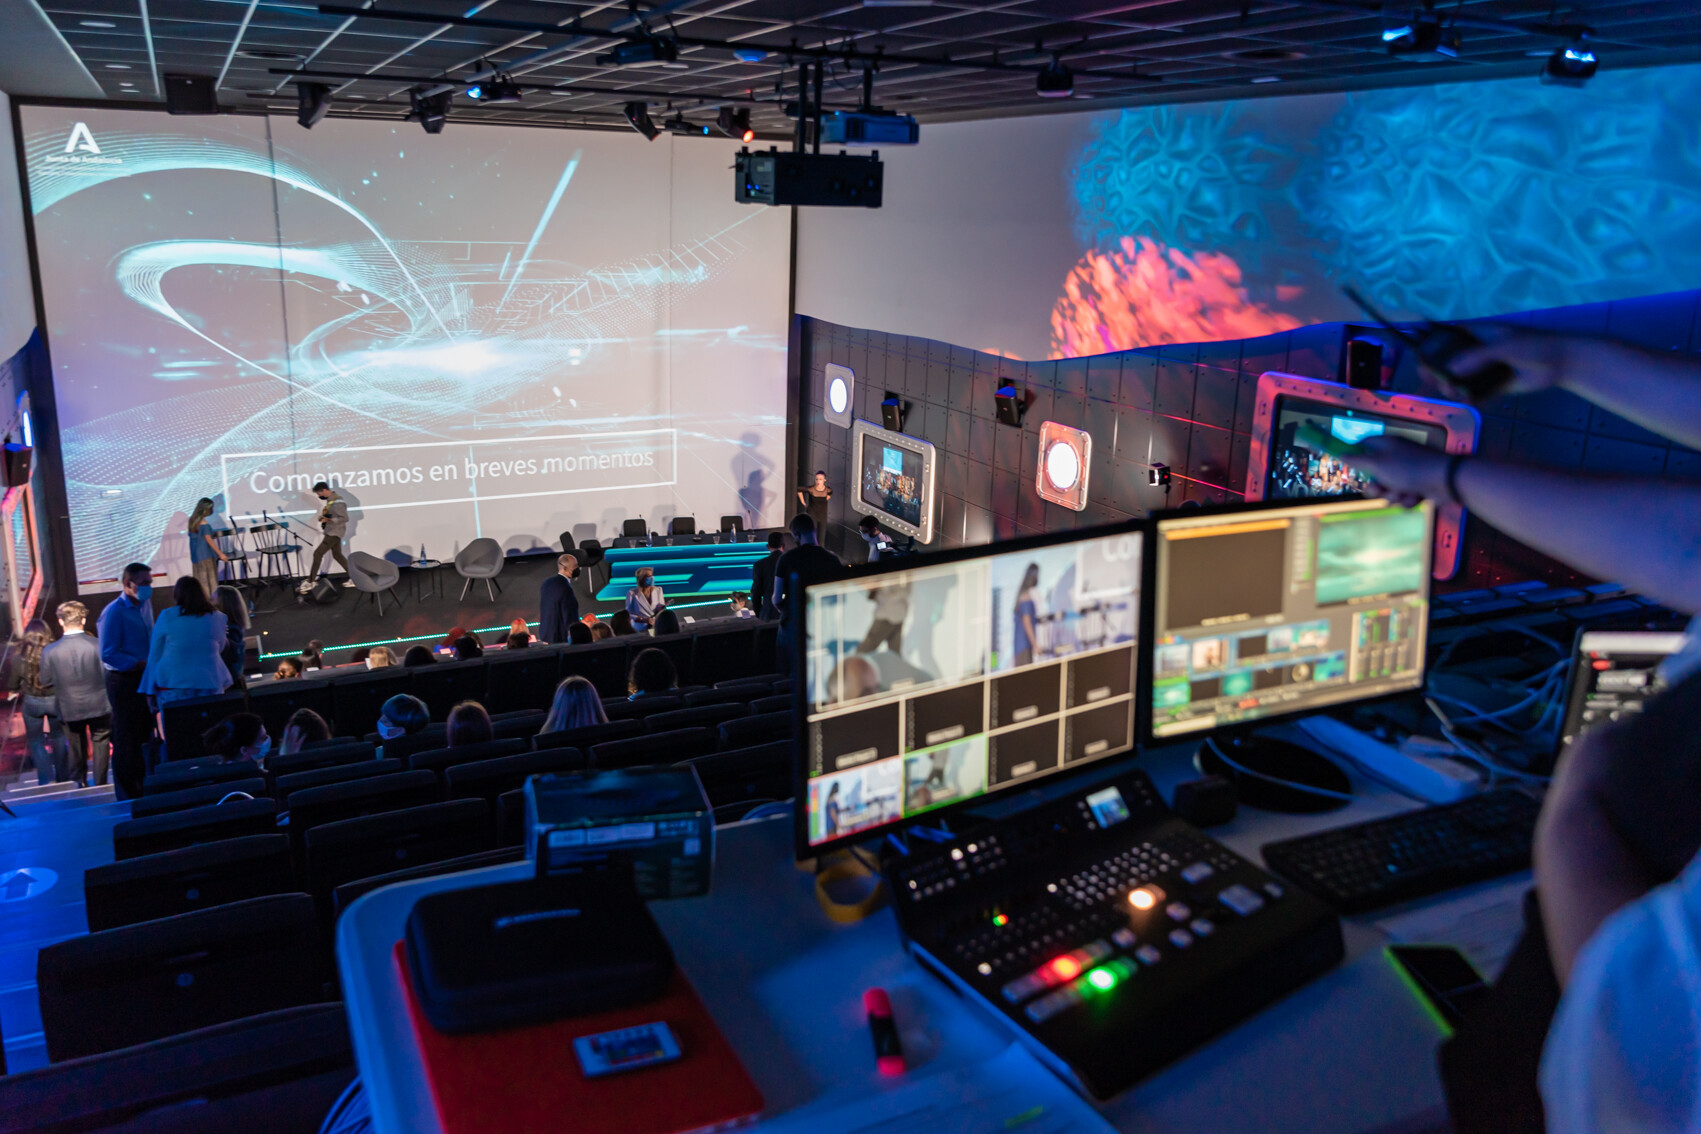 Mesa de control de sonido, luces y proyección del auditorio, al fondo se ve el escenario y una pantalla